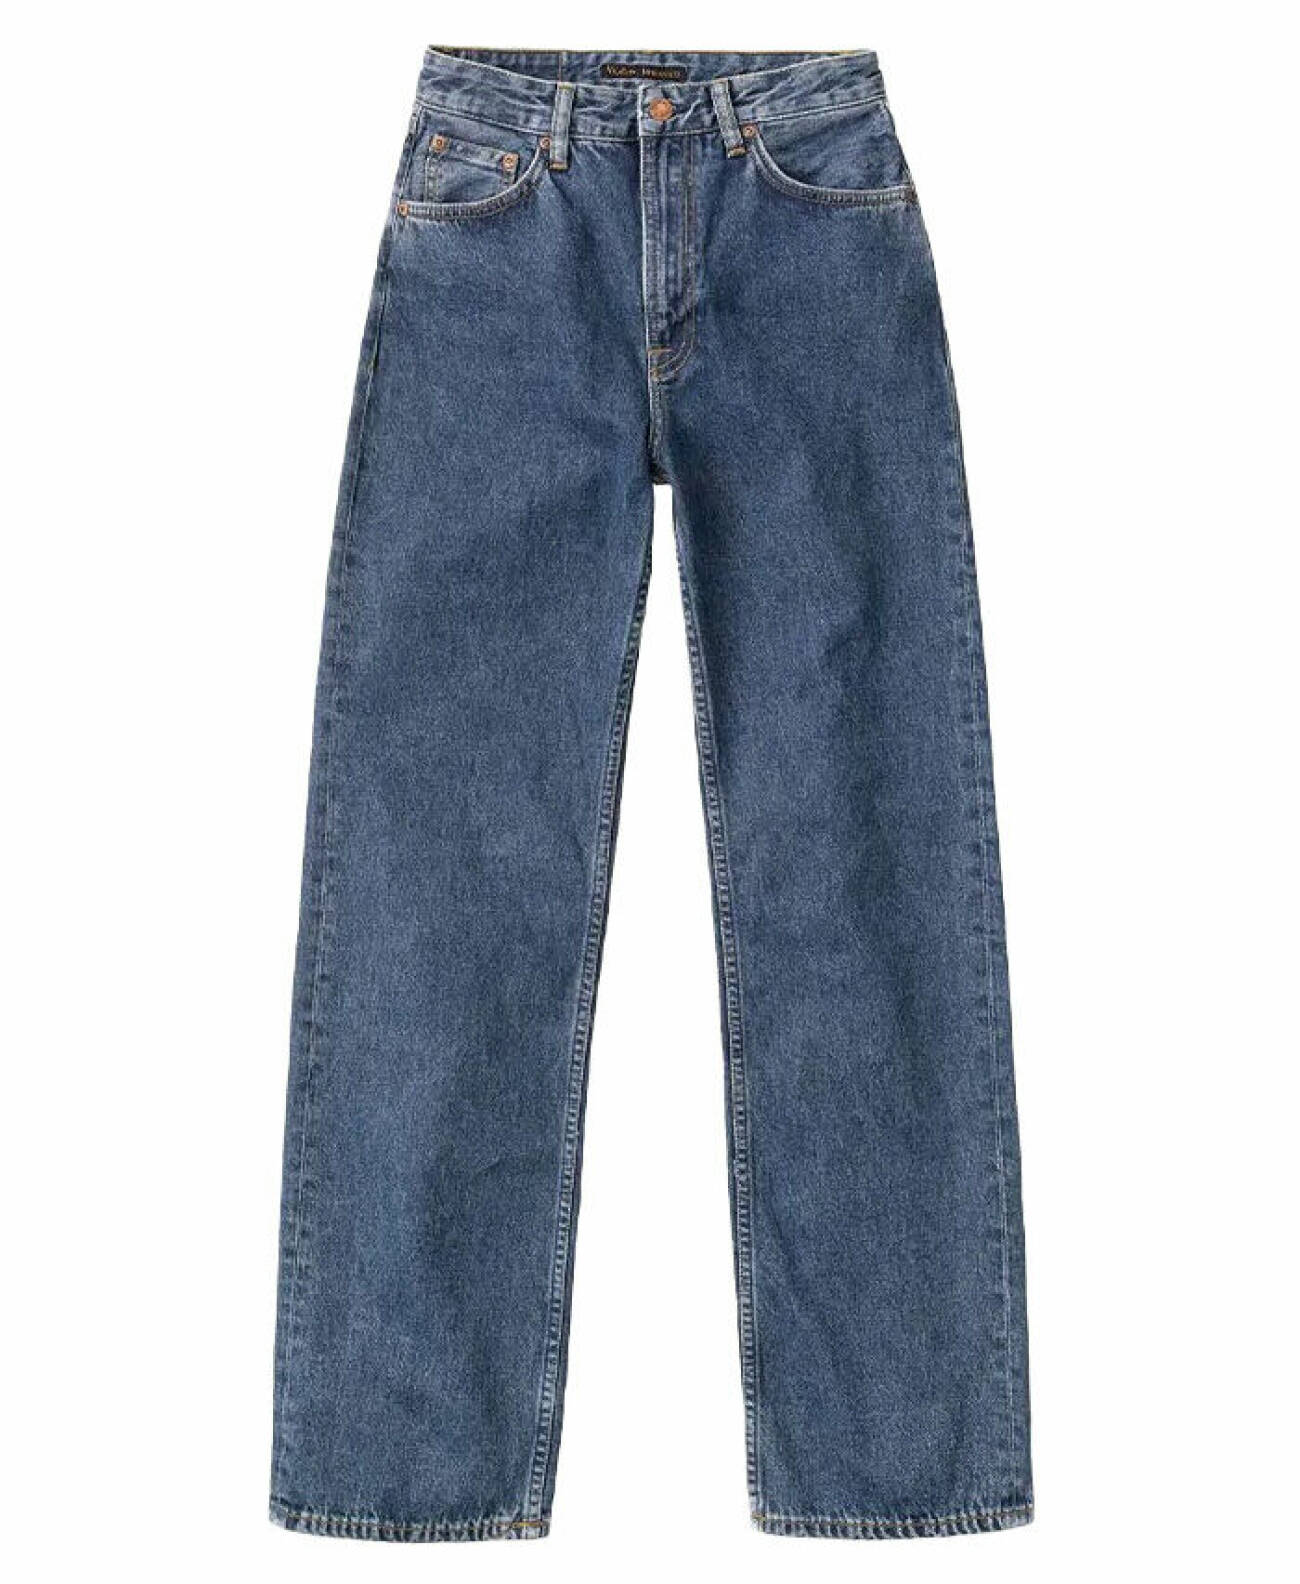 blå jeans med hög midja från Nudie att fynda på cyber monday